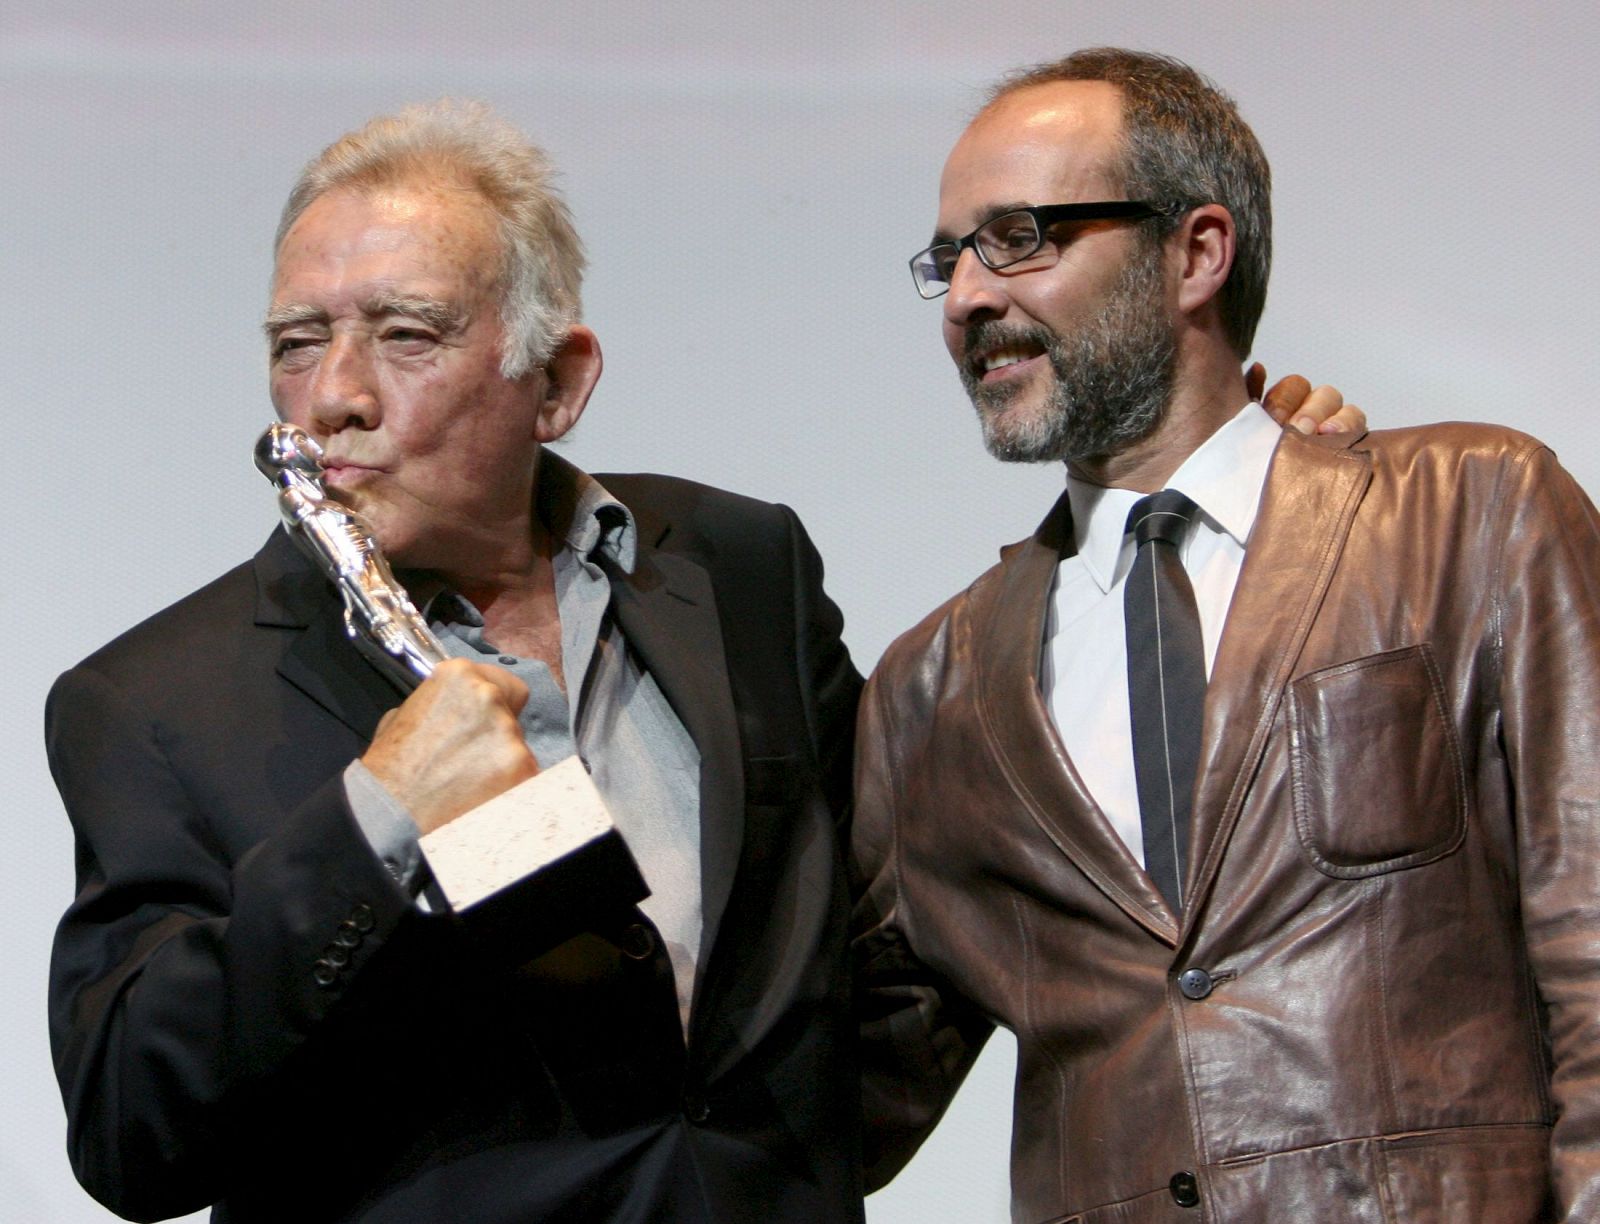 El actor Fernando Guillén, junto a su hijo, Fernando GuillénCuervo, recoge esta noche el premio del festival "Maria Honorífica" por su trayectoria profesional en el Festival Internacional de Cine de Sitges.